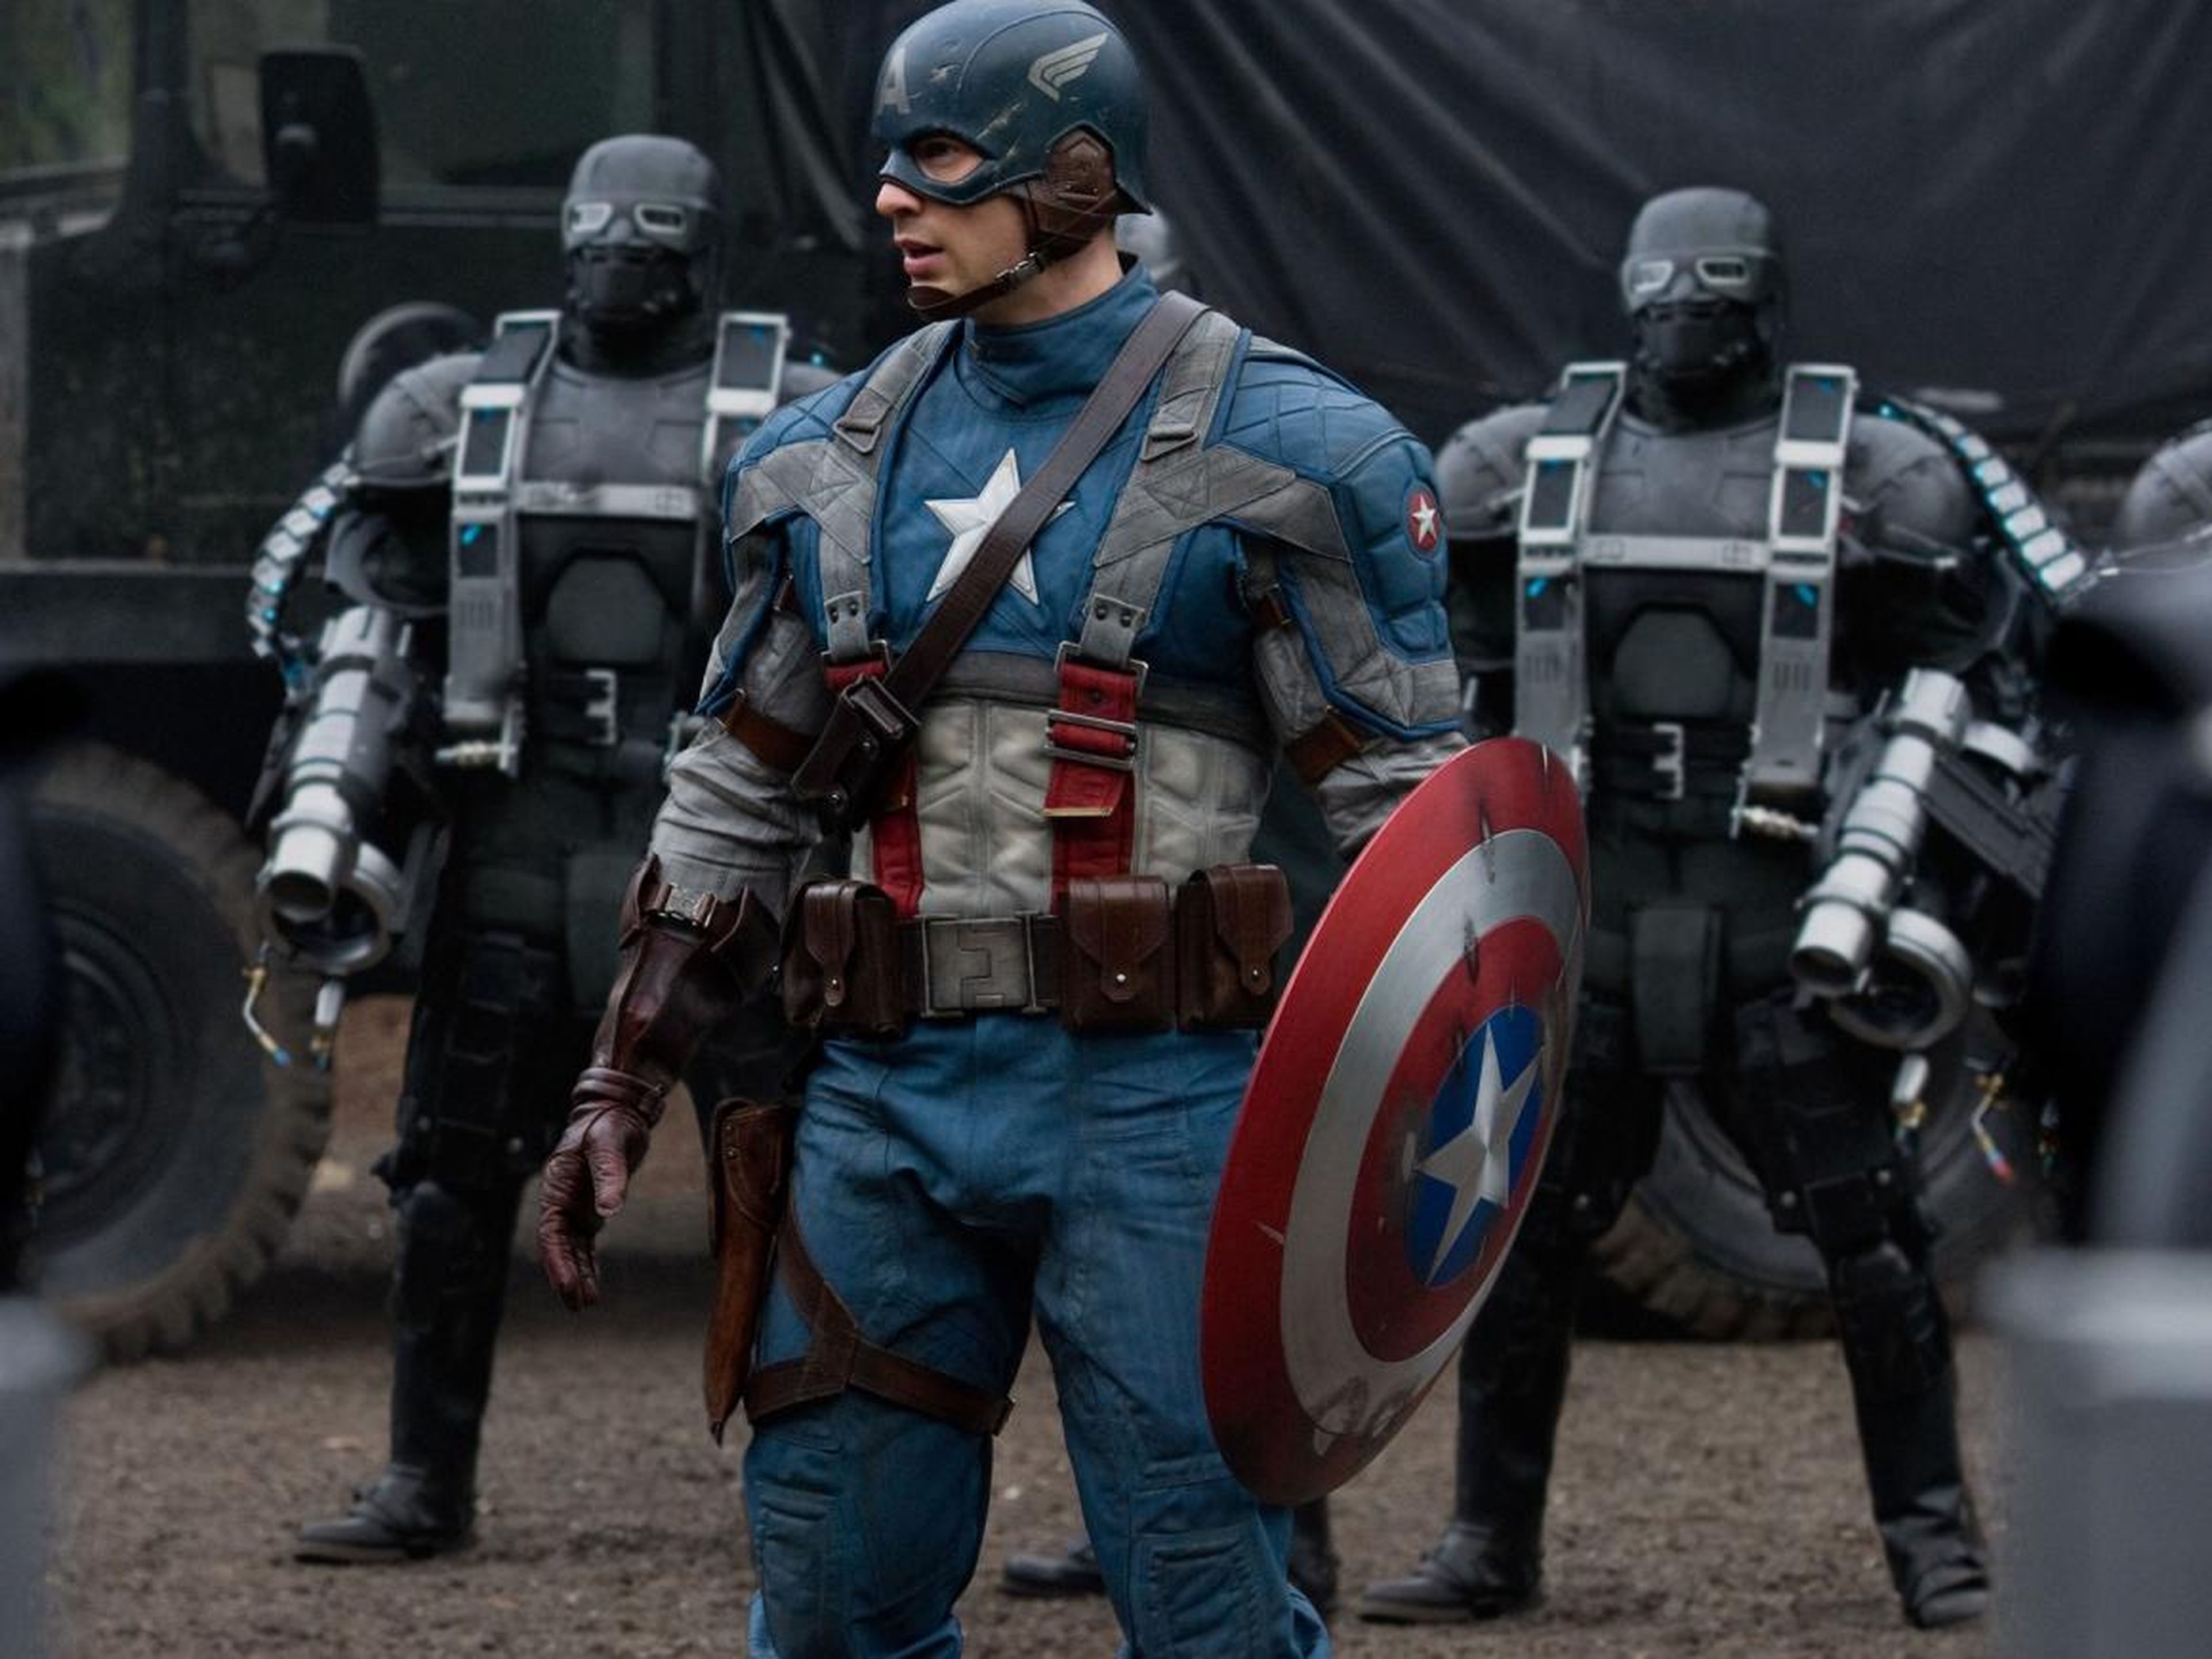 13. "Captain America: The First Avenger" (2011)